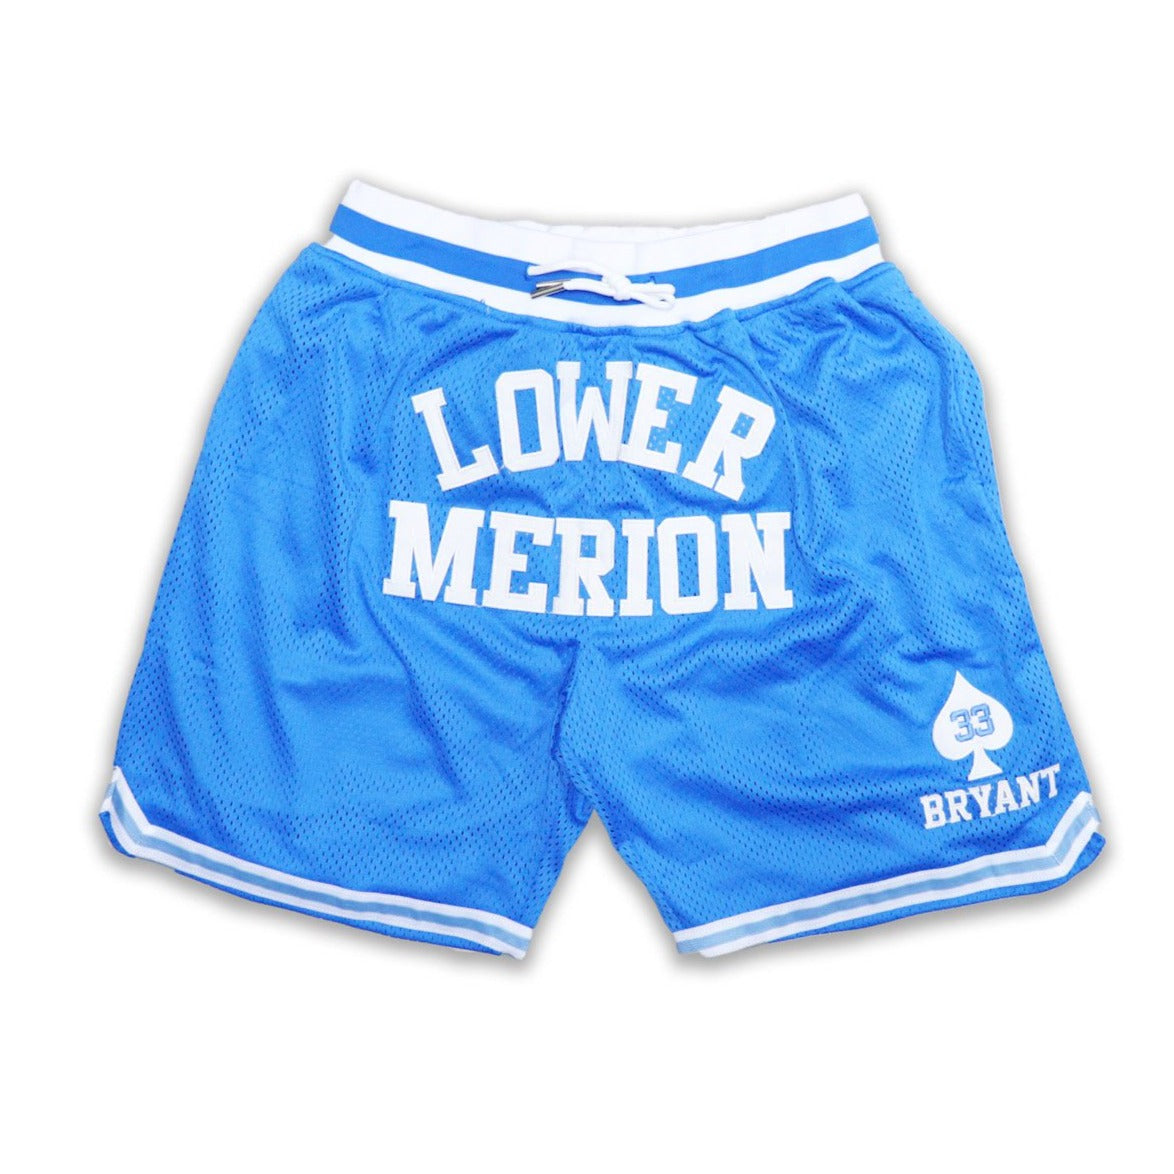 lower merion shorts